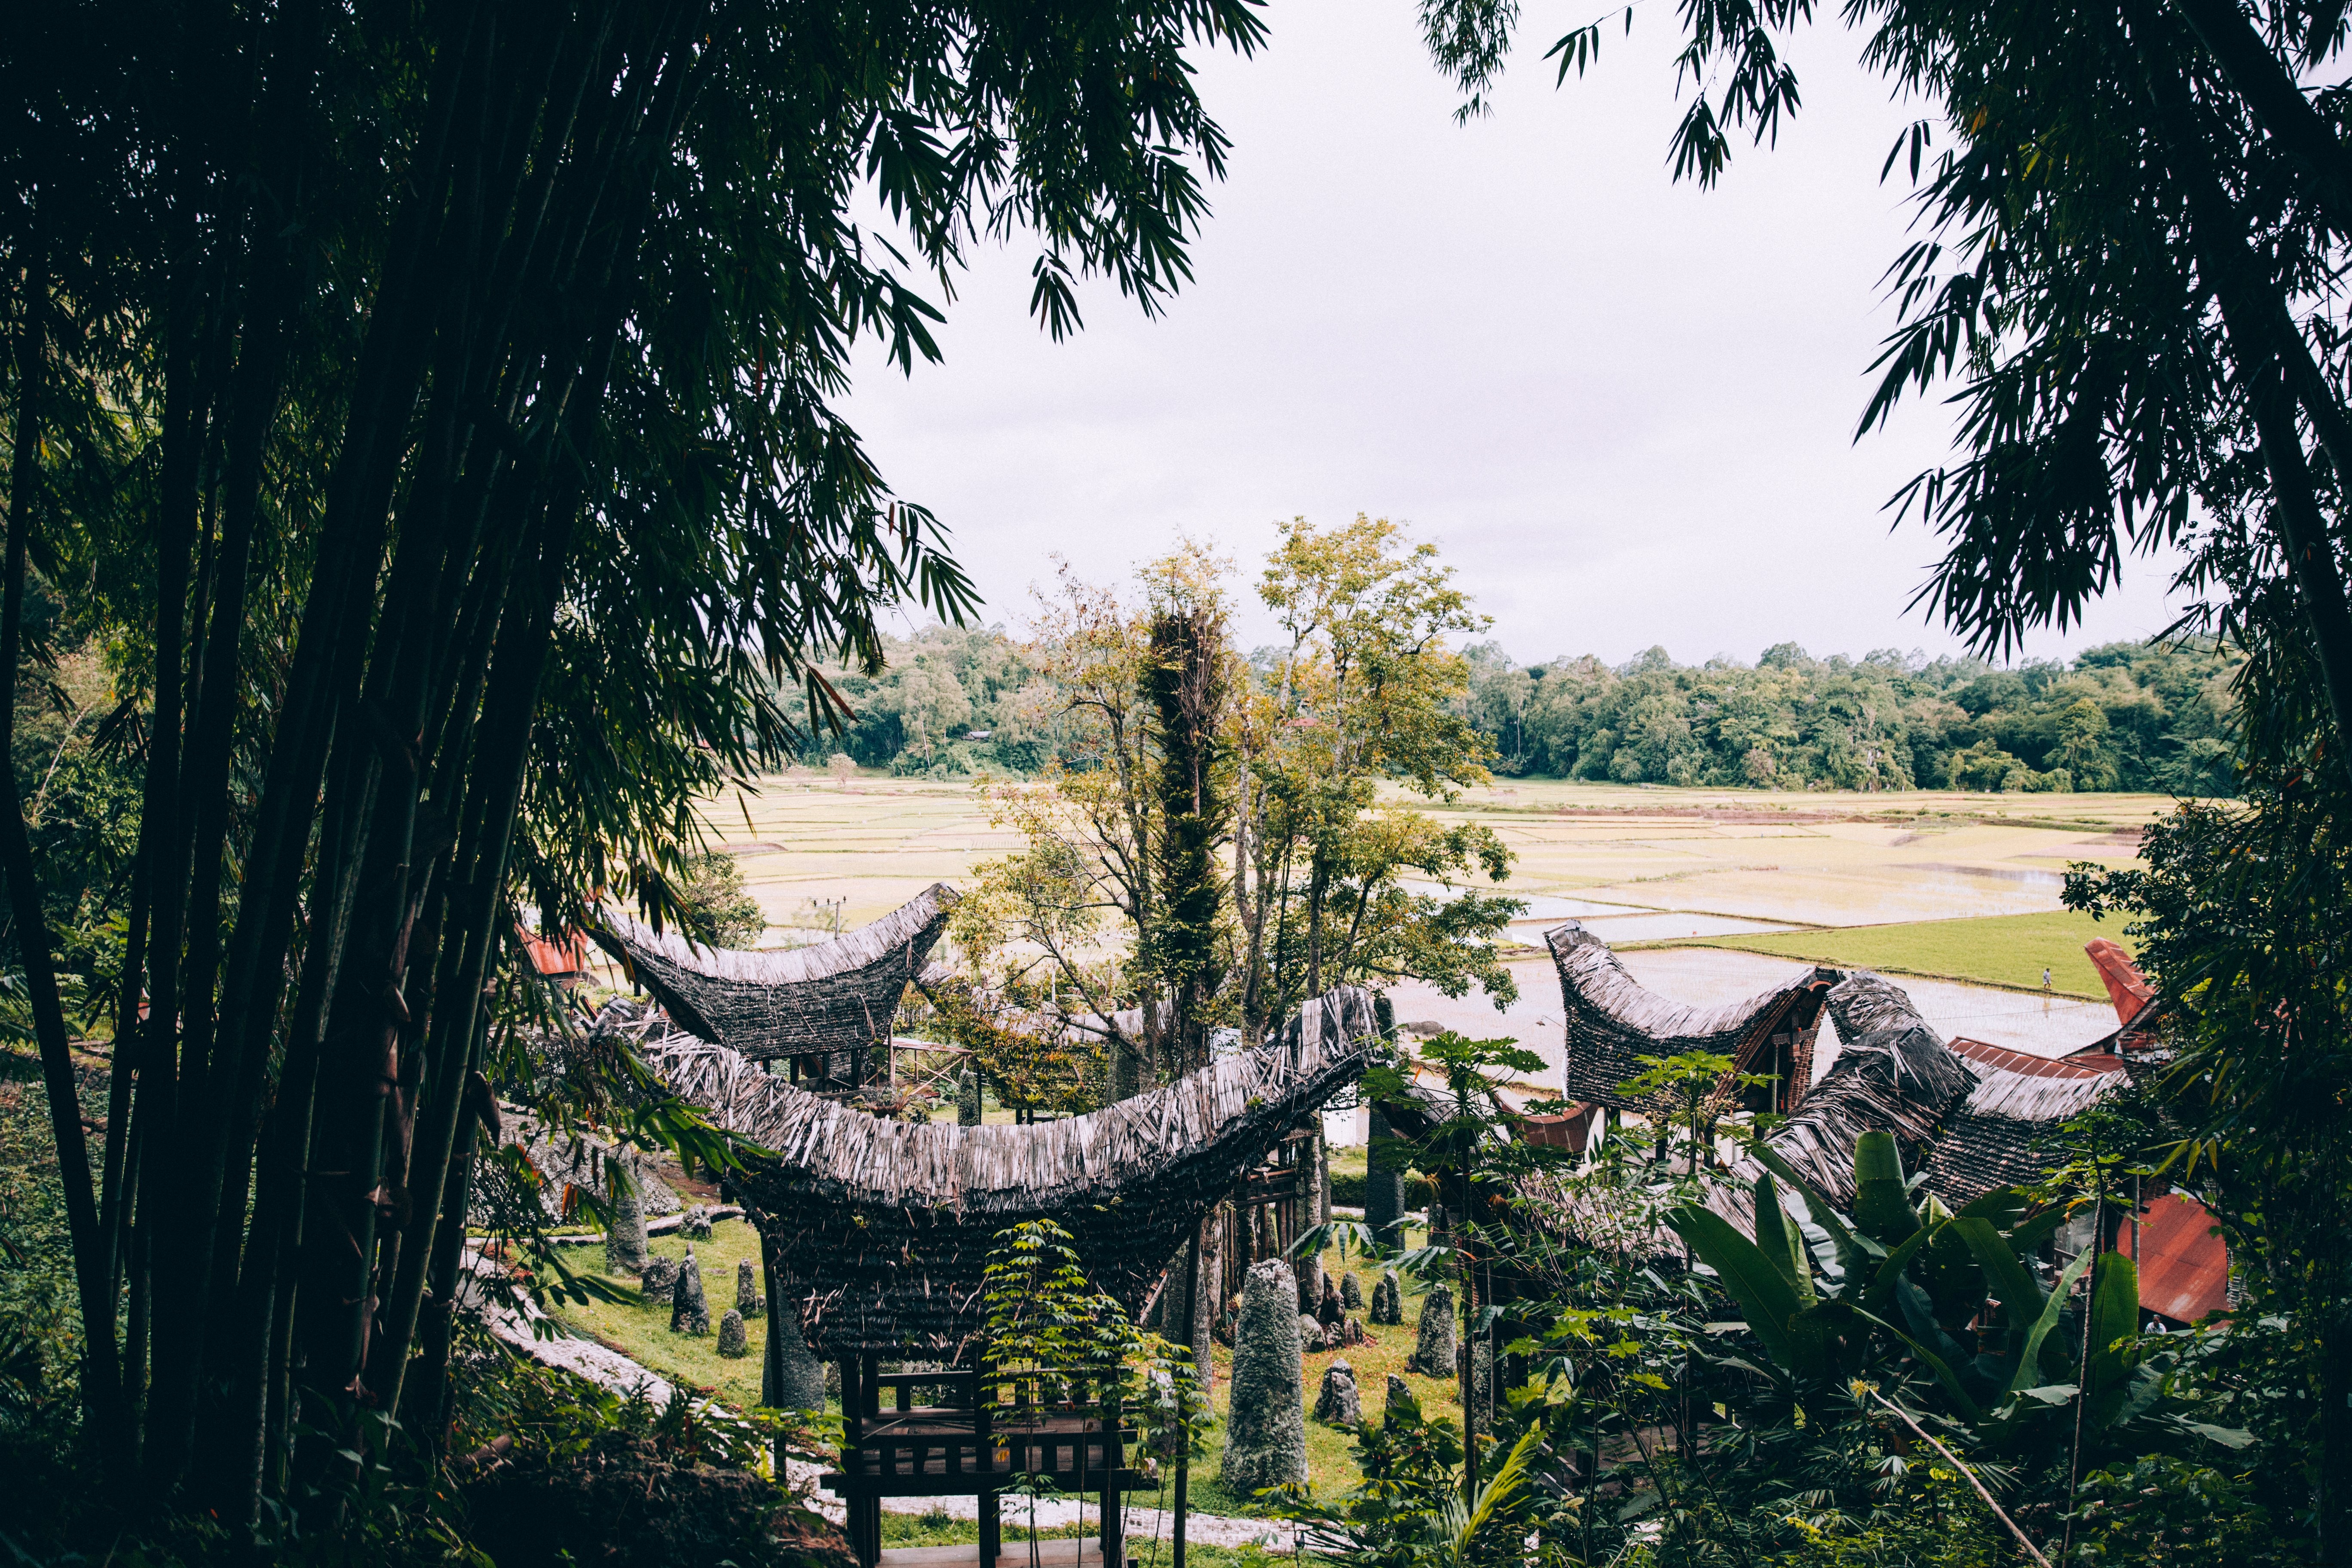 Une imposante forêt de bambous surplombe un temple indonésien Photo 